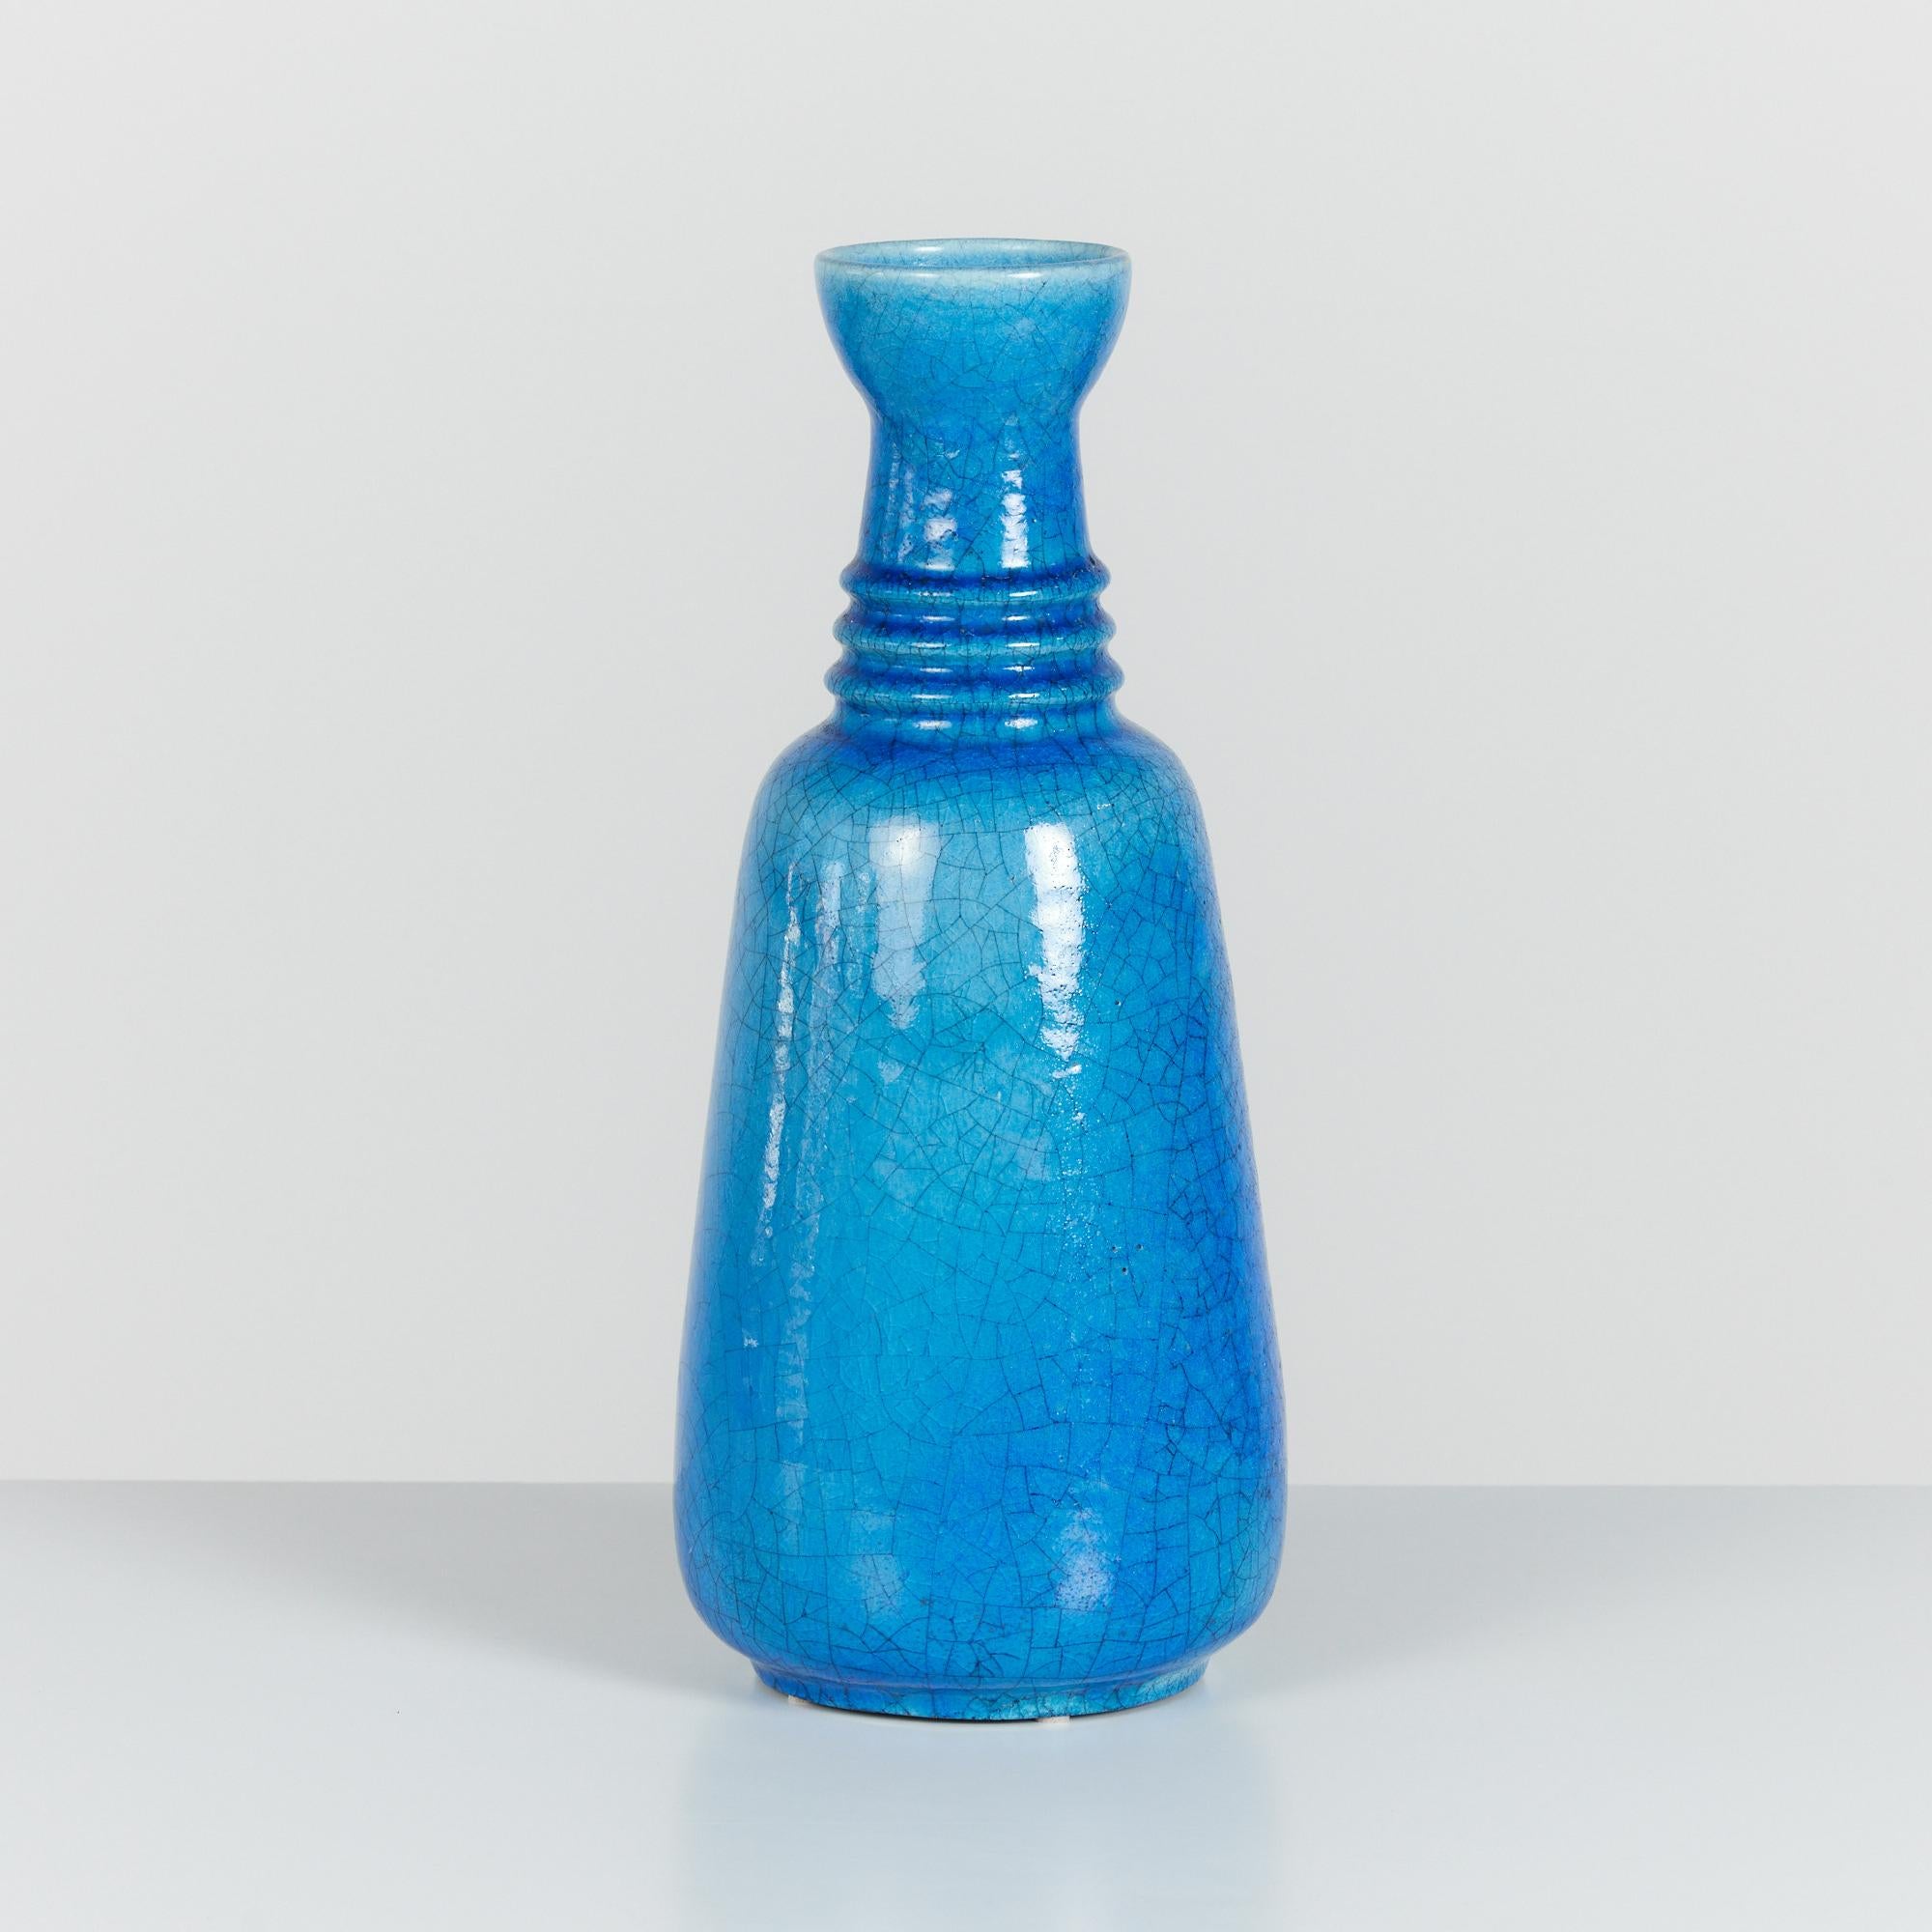 Vase en céramique d'Arnold Zahner, vers les années 1960, Rheinfelden, Suisse. Ce vase présente une glaçure bleue brillante et craquelée. L'encolure présente des détails côtelés et une ouverture tulipe. Cachet de l'artiste sur la face